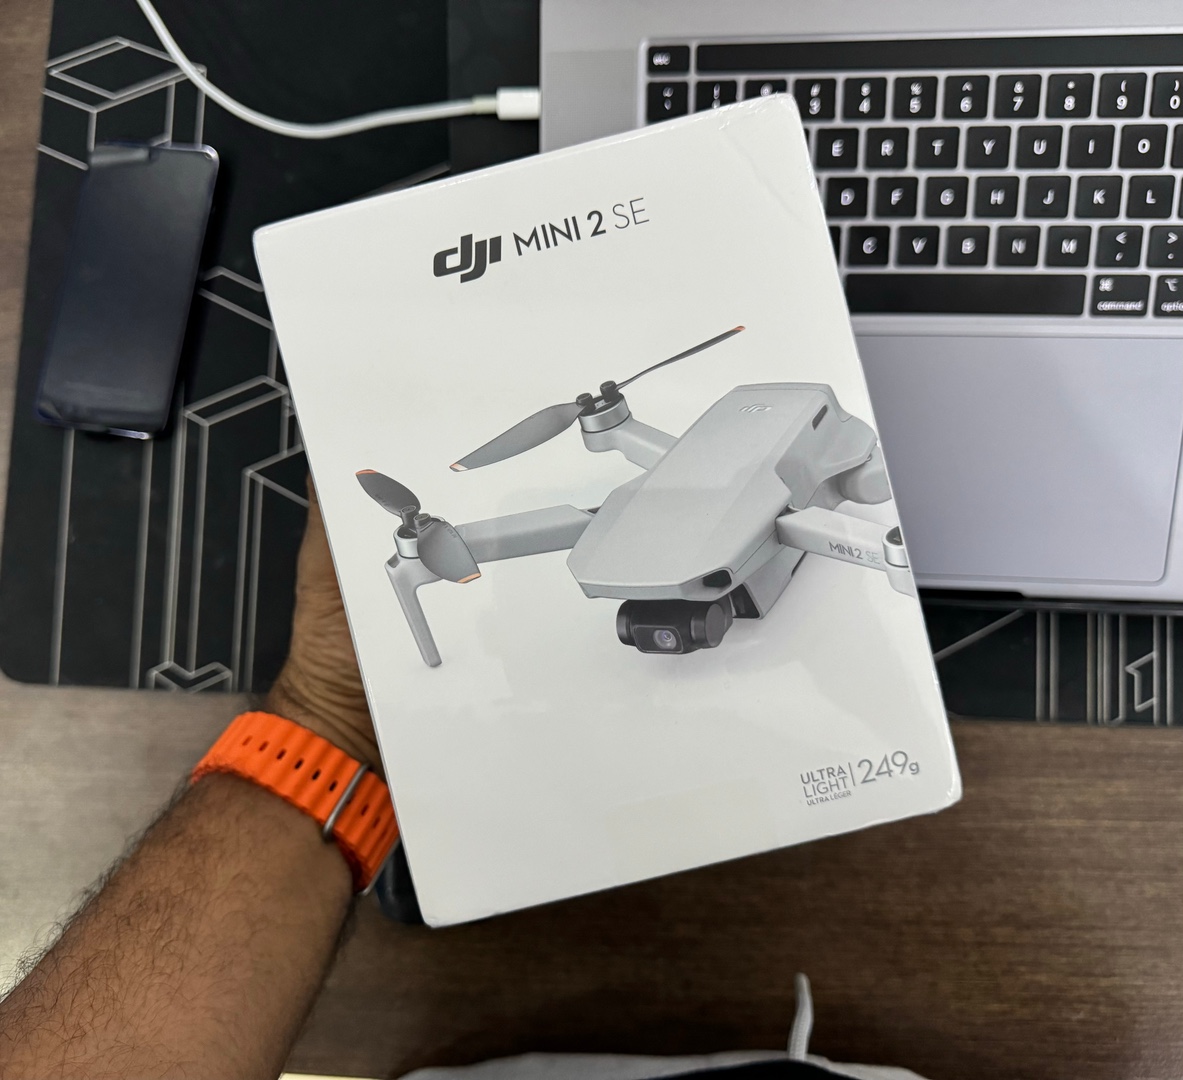 camaras y audio - Drone DJI MINI 2 SE Nuevo Sellado Completo + EXTRAS!!